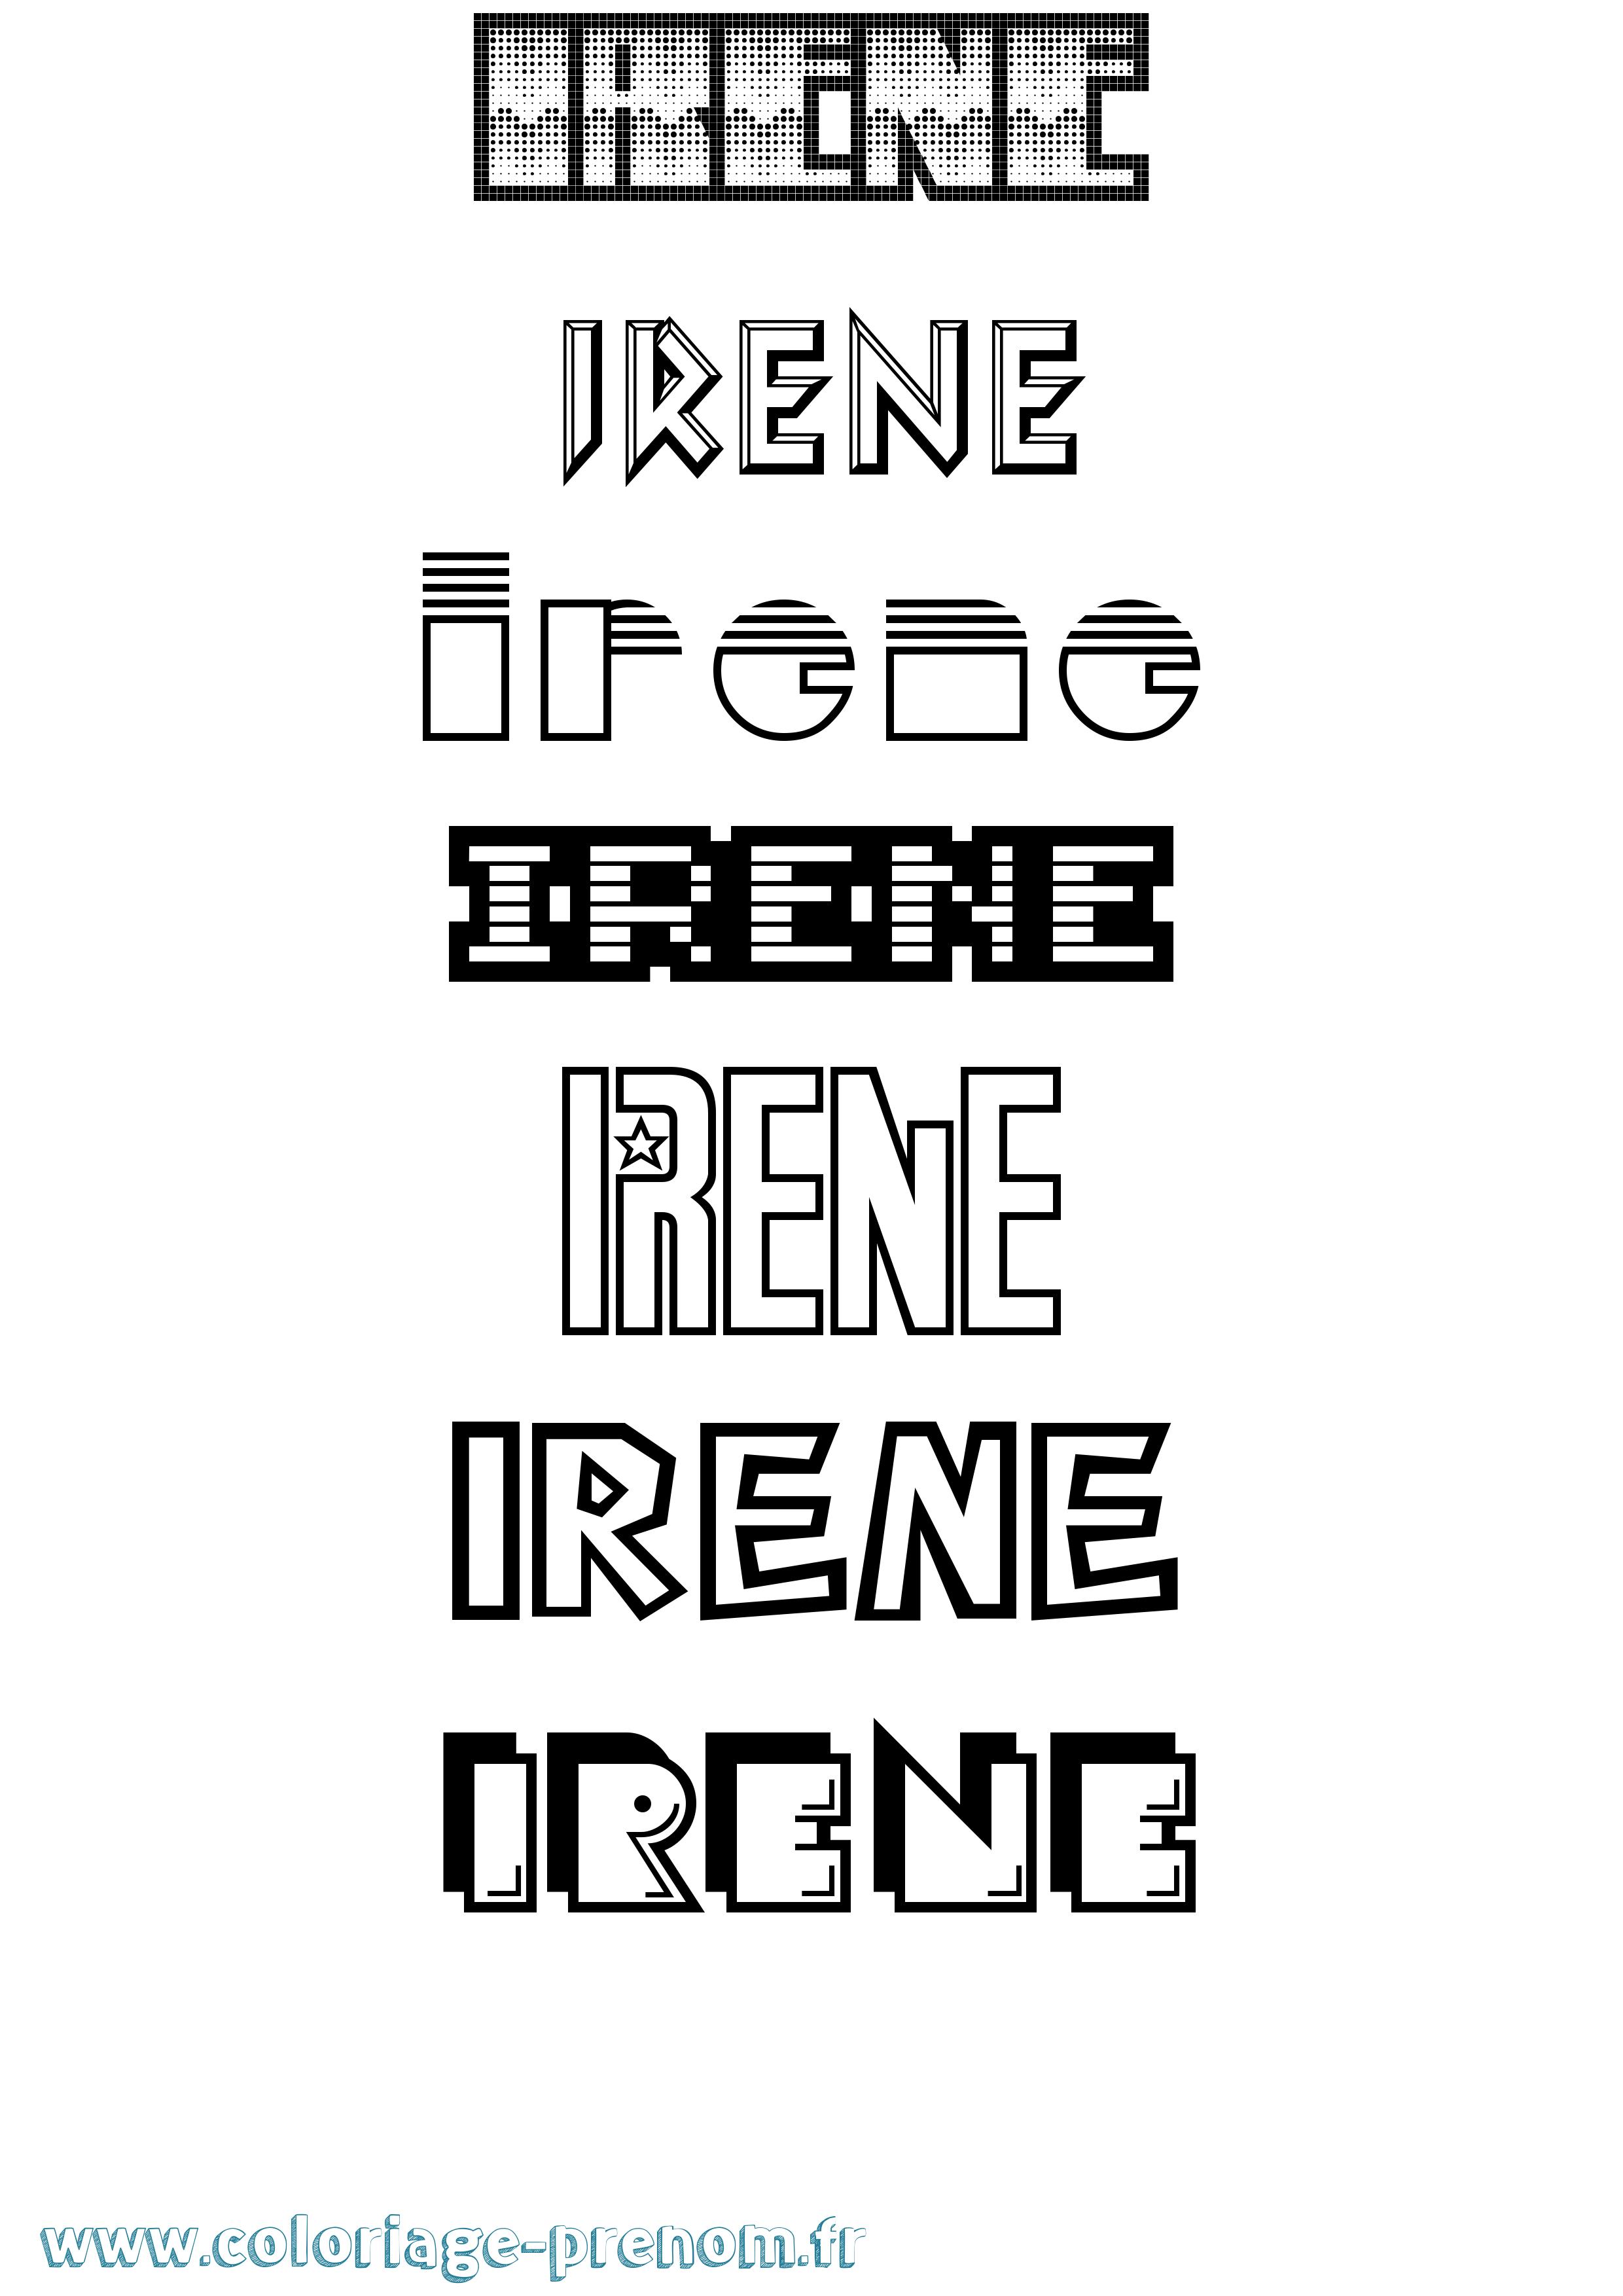 Coloriage prénom Irene Jeux Vidéos